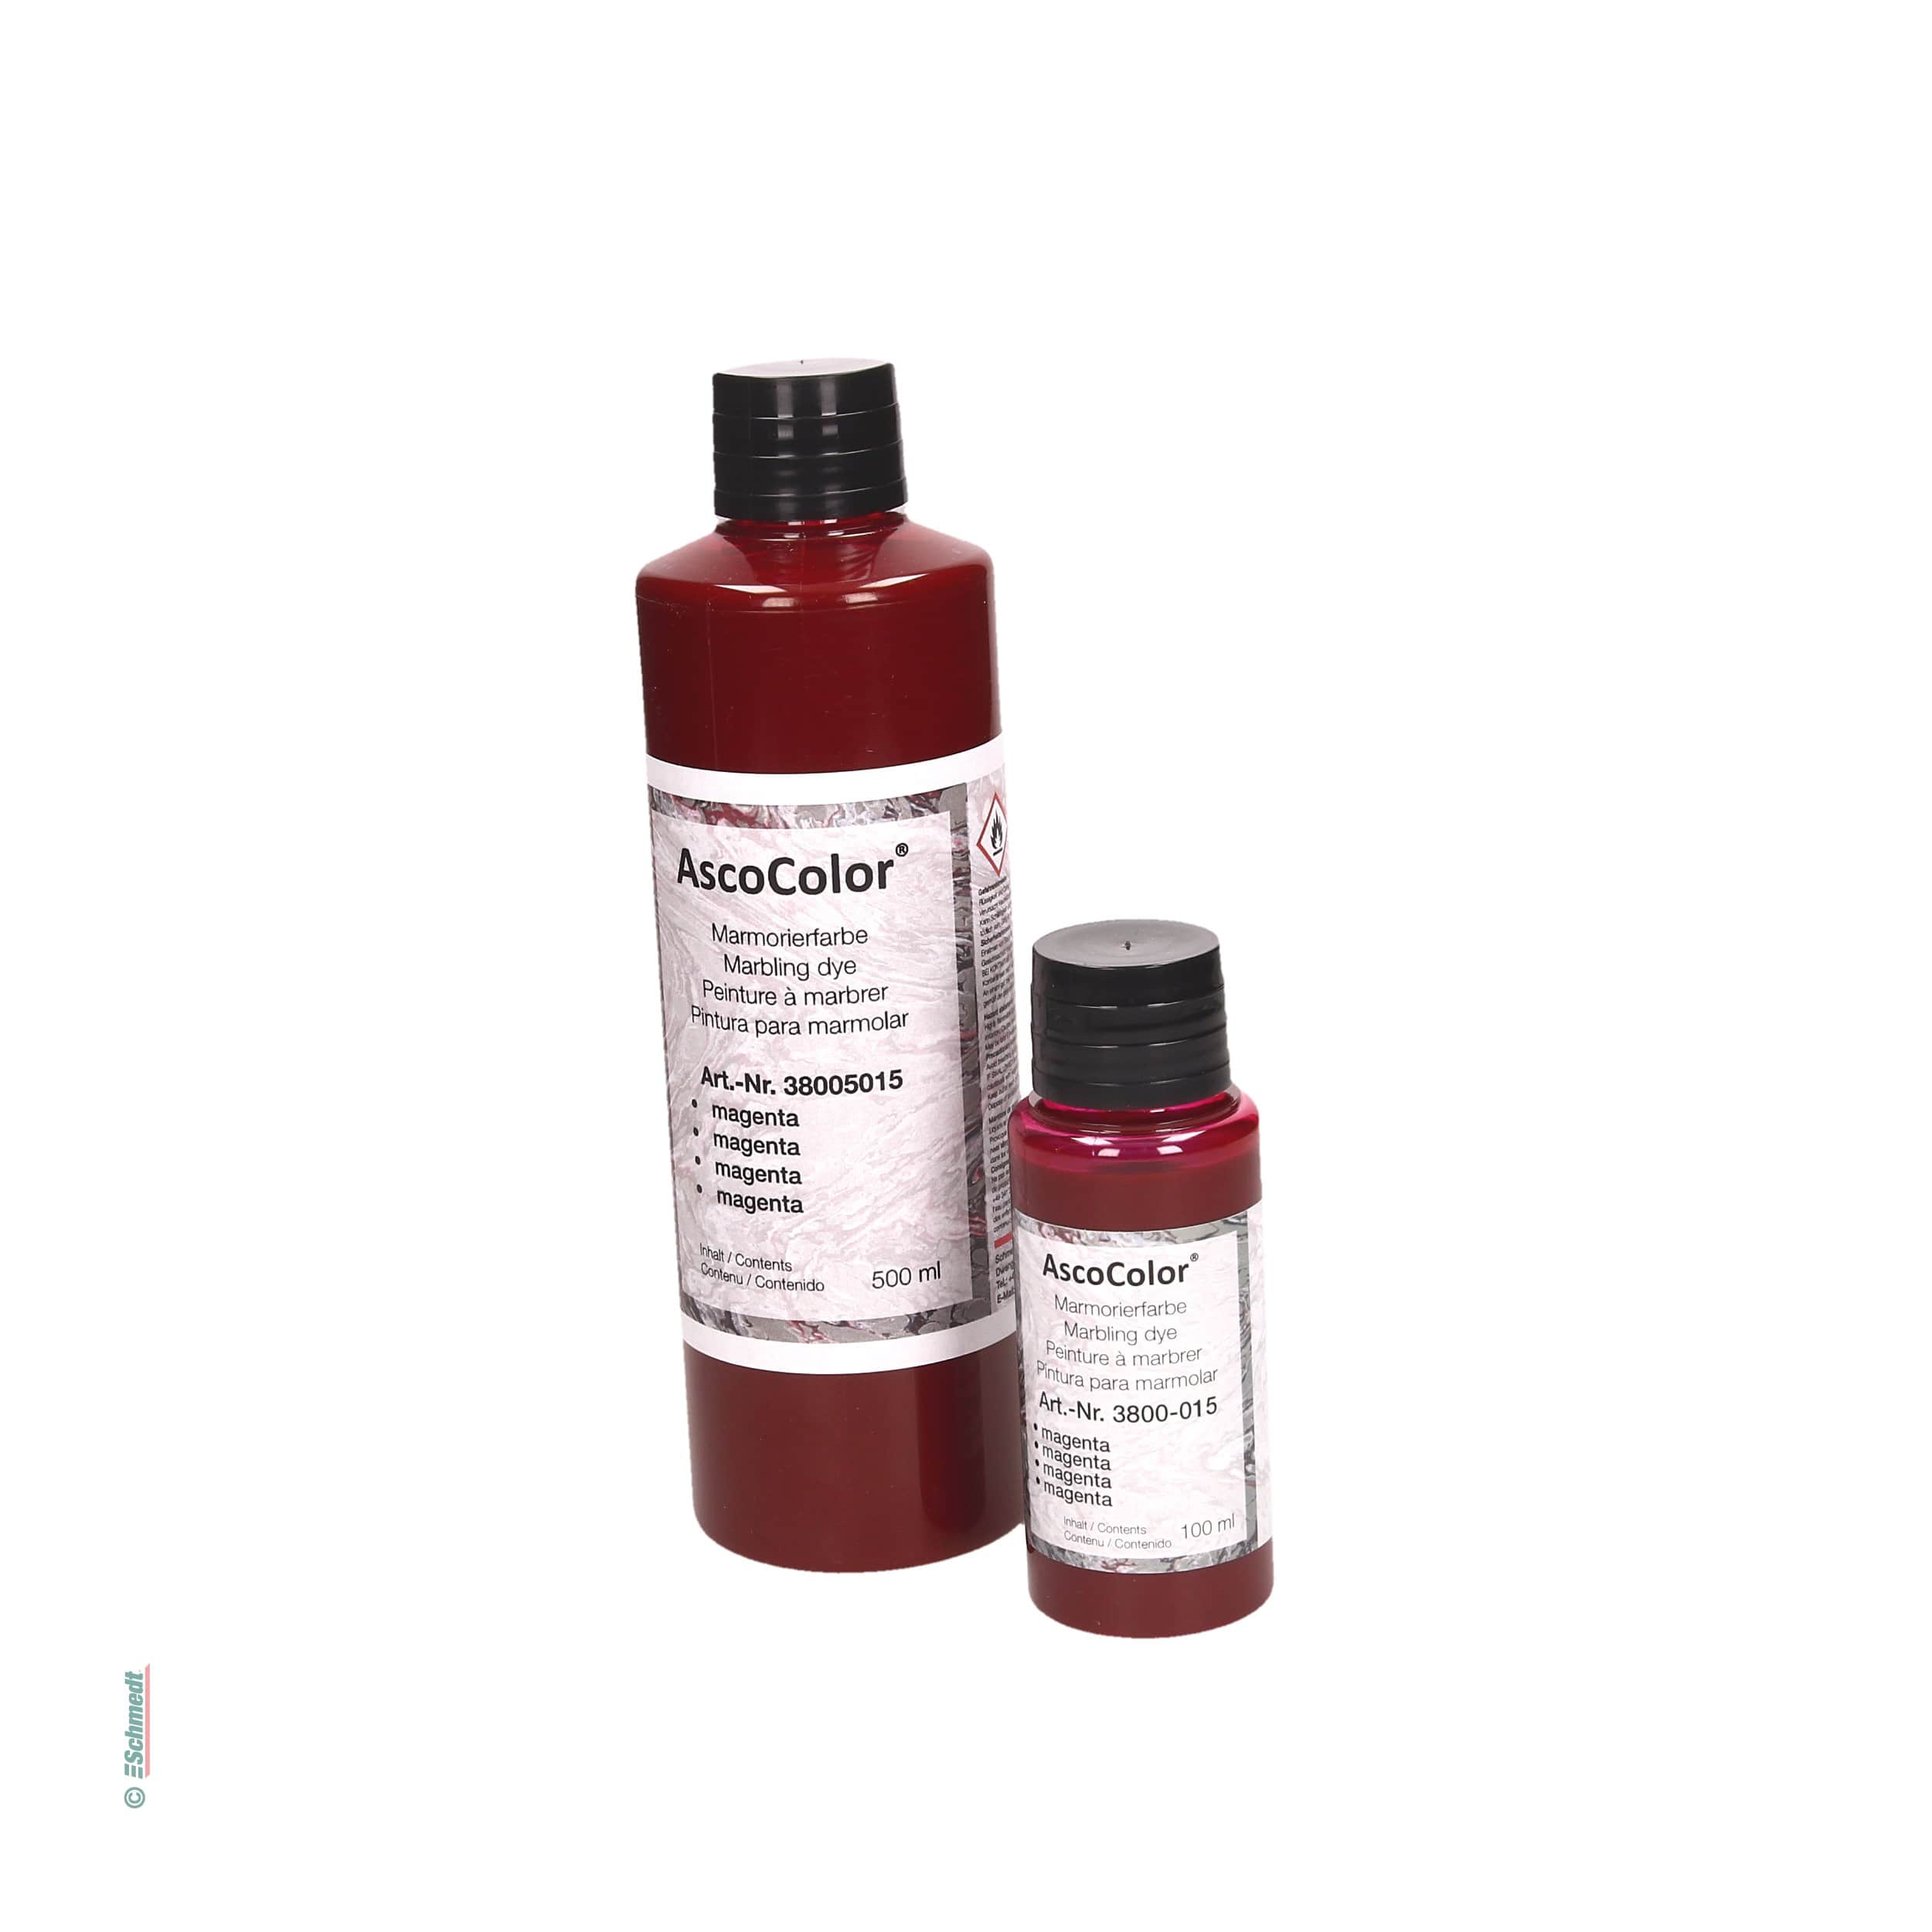 AscoColor® - peinture à marbrer - Couleur magenta - Contenu Bouteille / 100 ml - pour créér papiers marbrés... - image-1